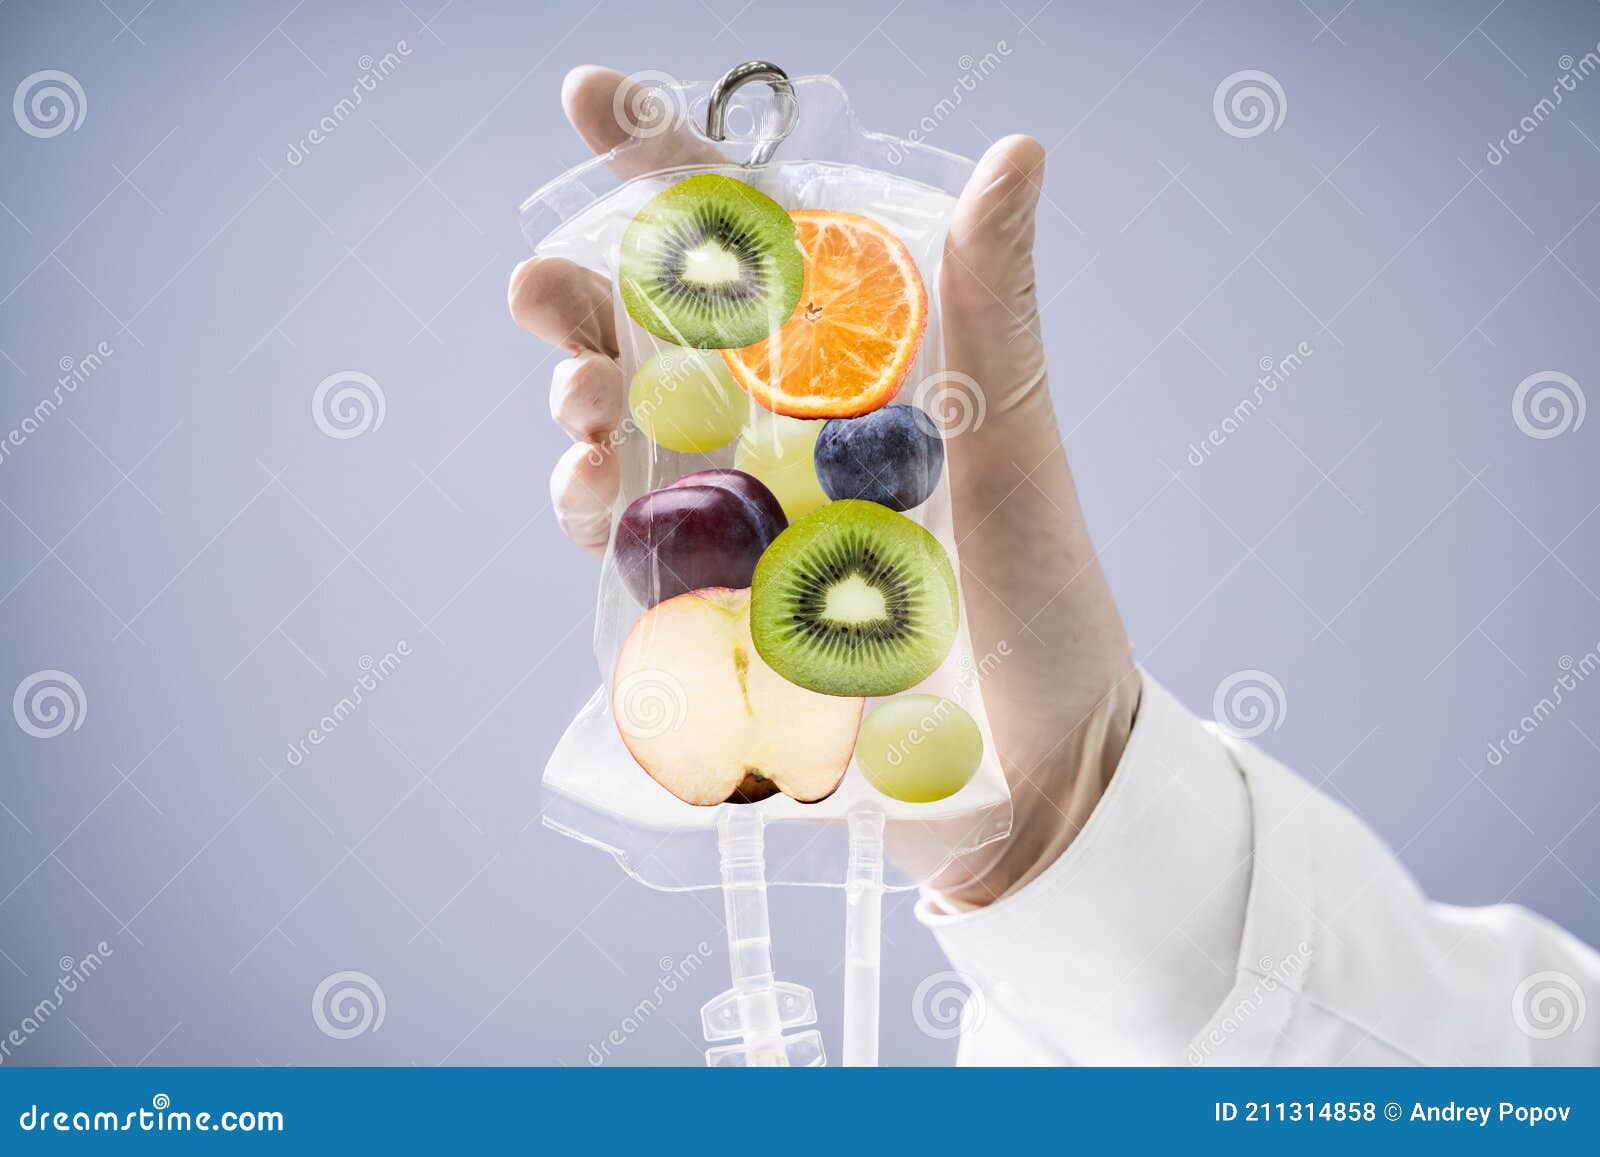 doctor holding saline bag with fruit slices inside in hospital